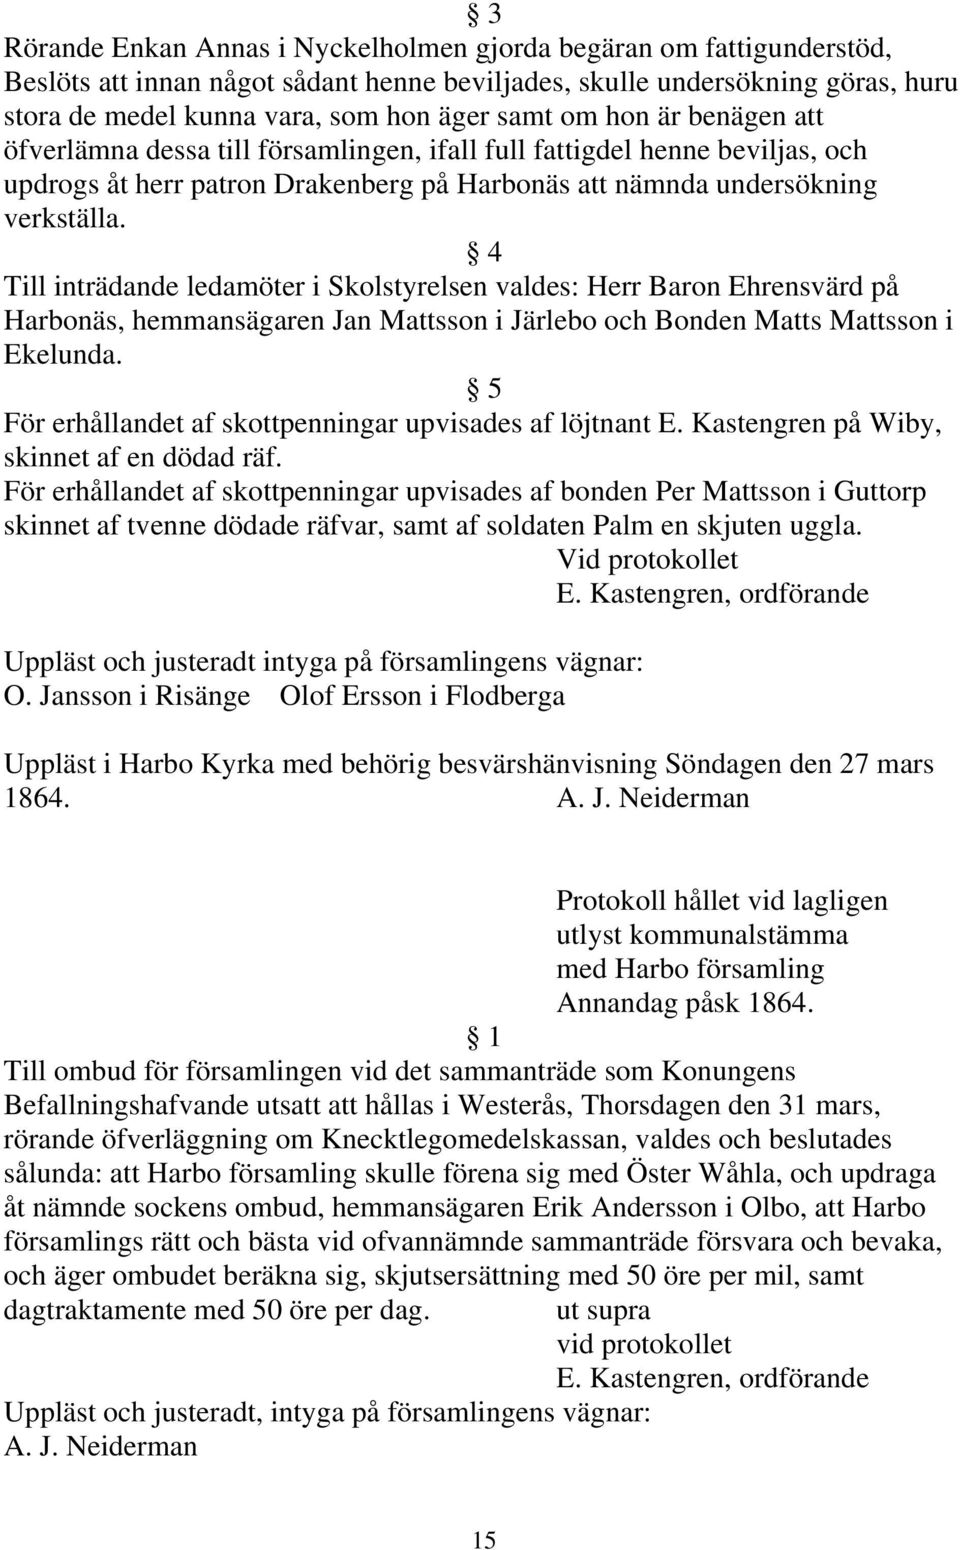 4 Till inträdande ledamöter i Skolstyrelsen valdes: Herr Baron Ehrensvärd på Harbonäs, hemmansägaren Jan Mattsson i Järlebo och Bonden Matts Mattsson i Ekelunda.